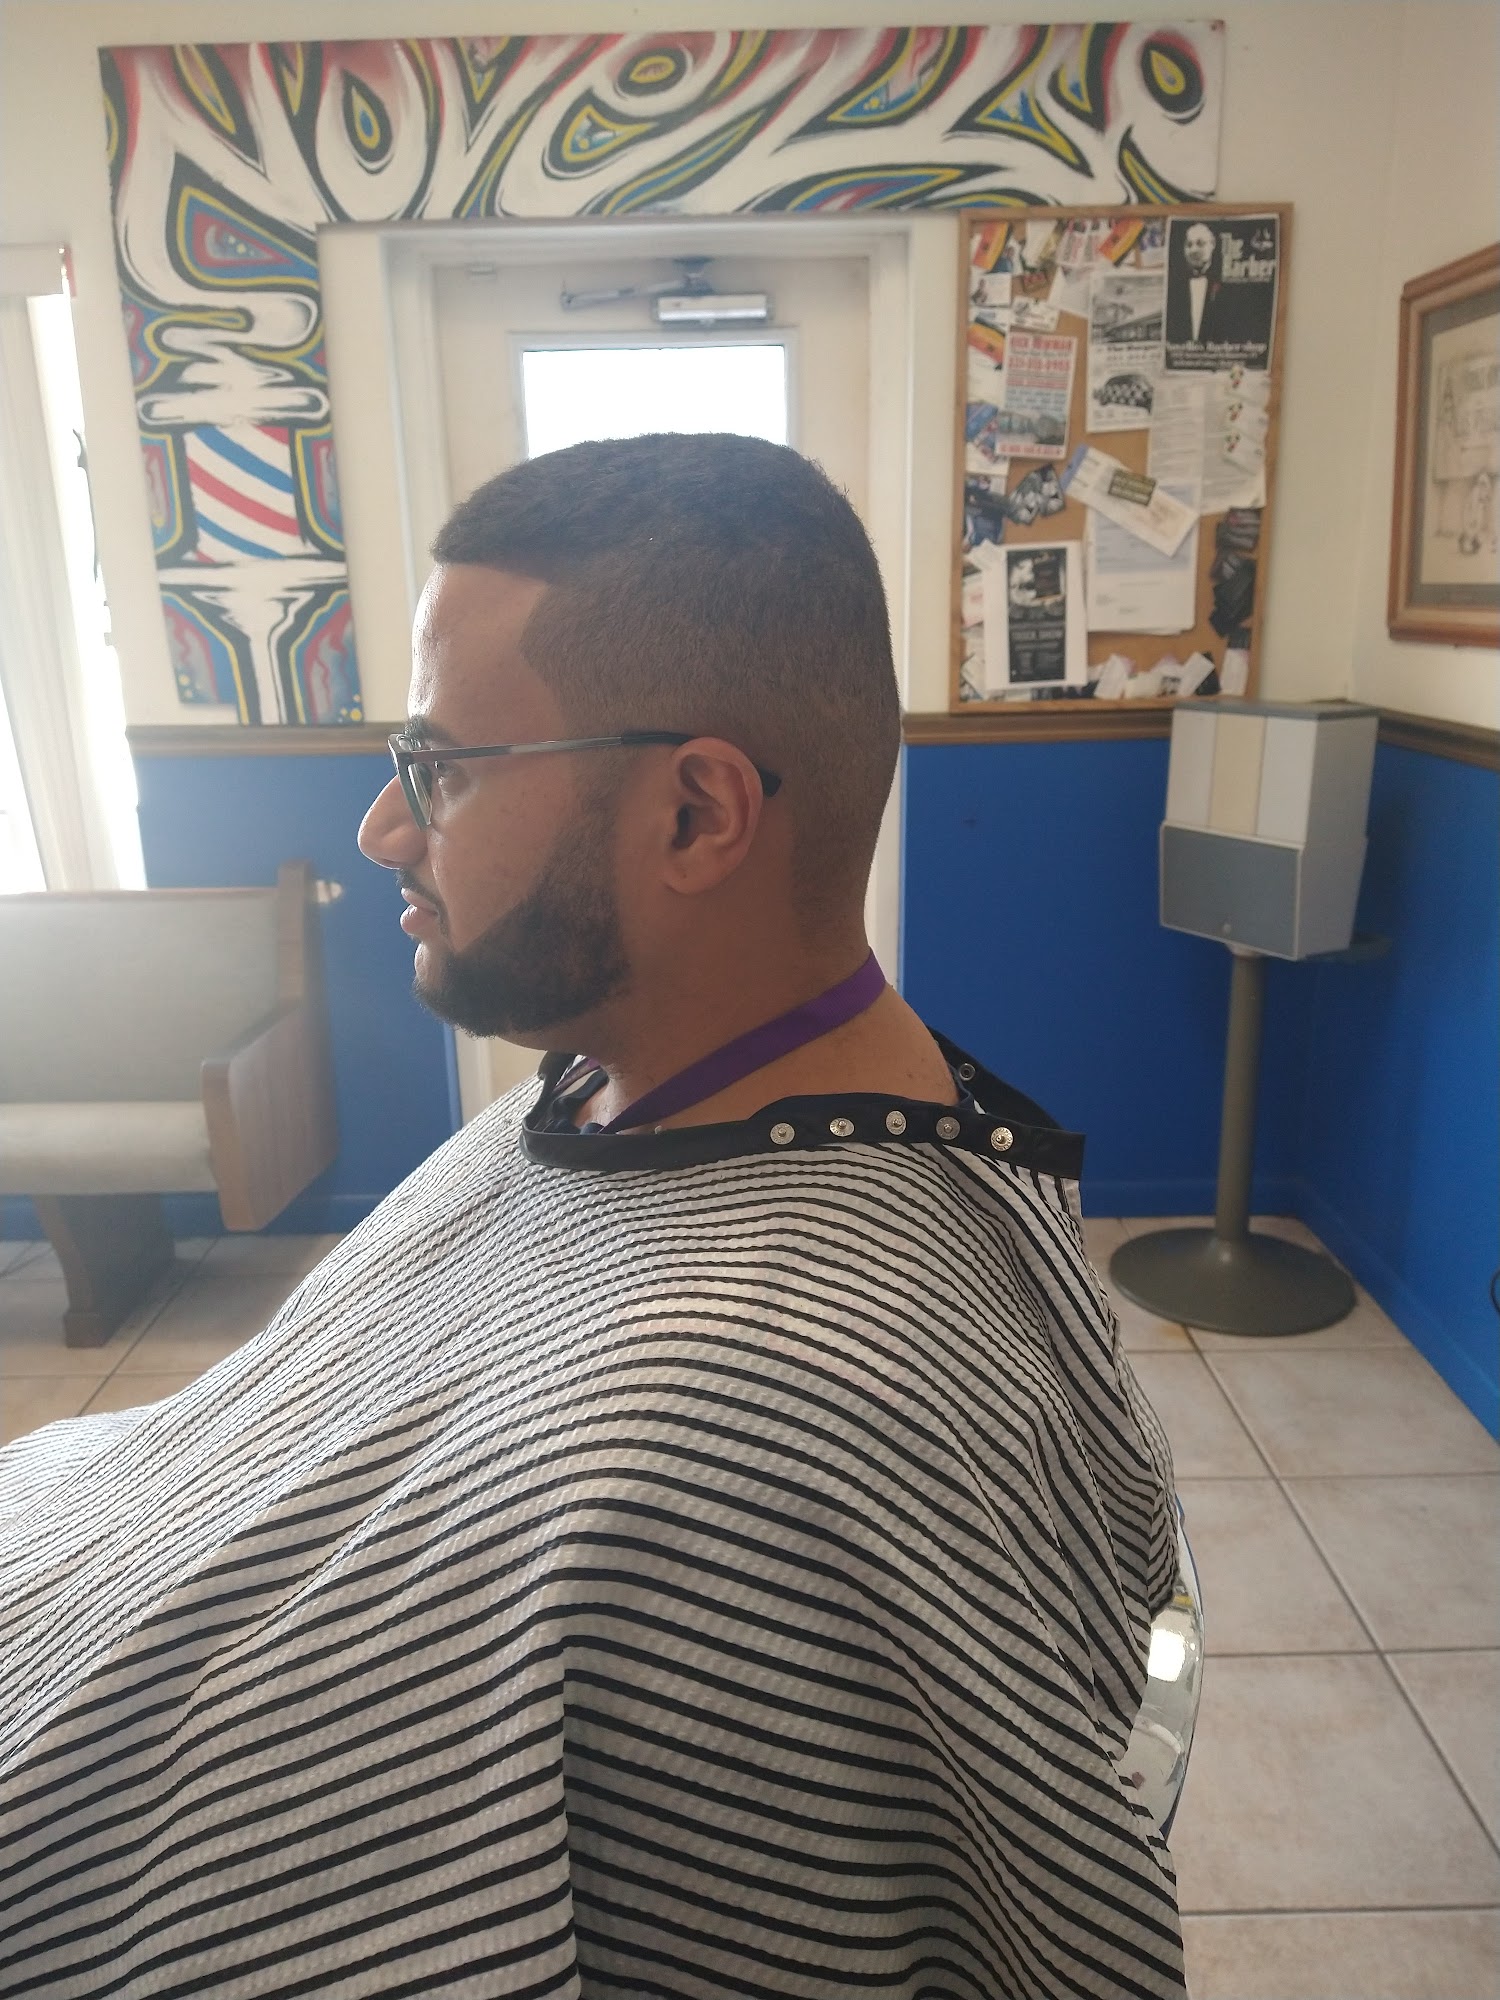 Novello's barbershop